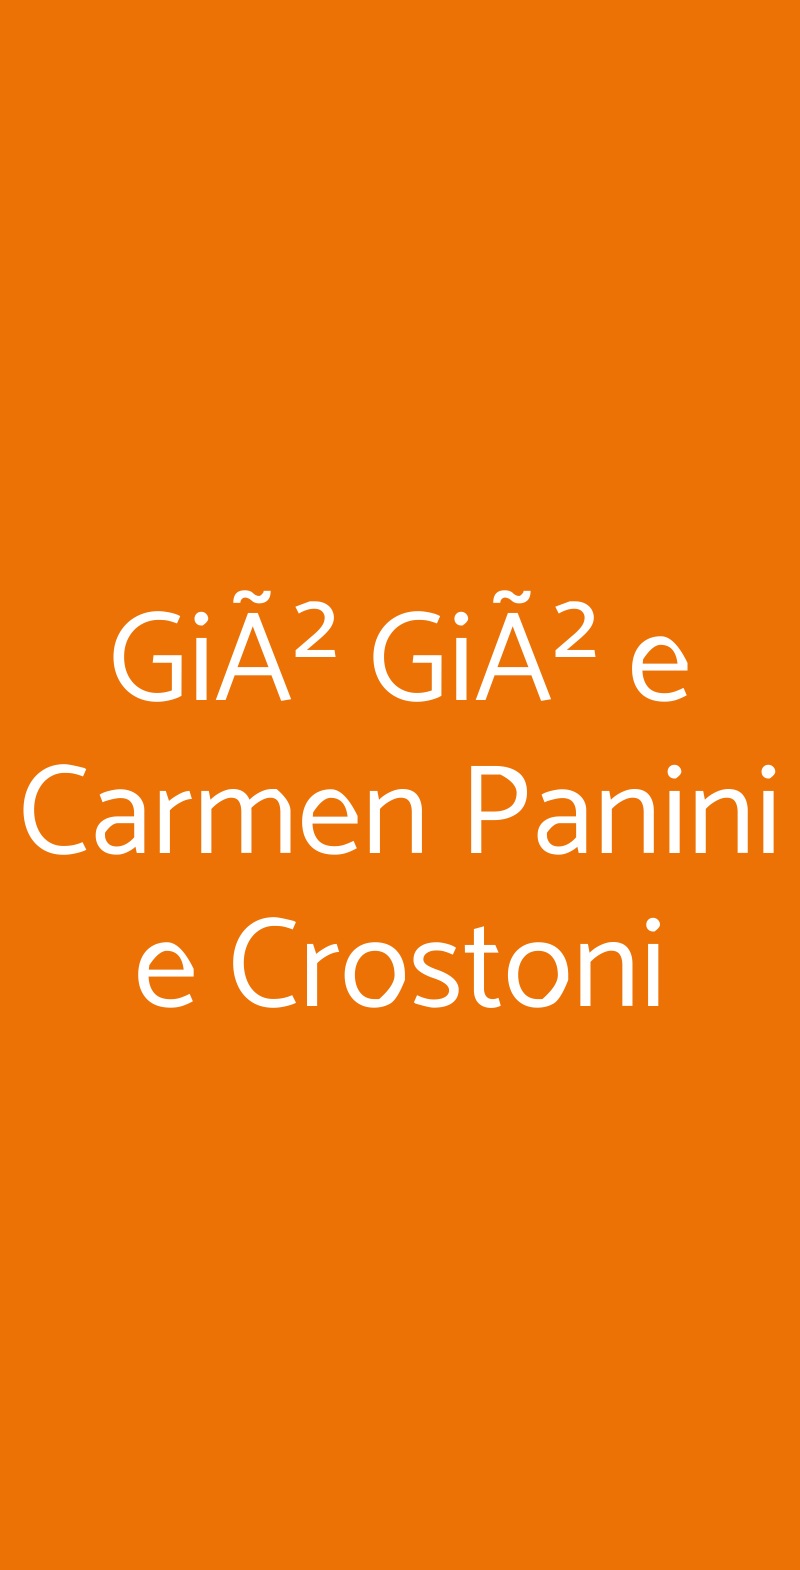 GiÃ² GiÃ² e Carmen Panini e Crostoni Napoli menù 1 pagina